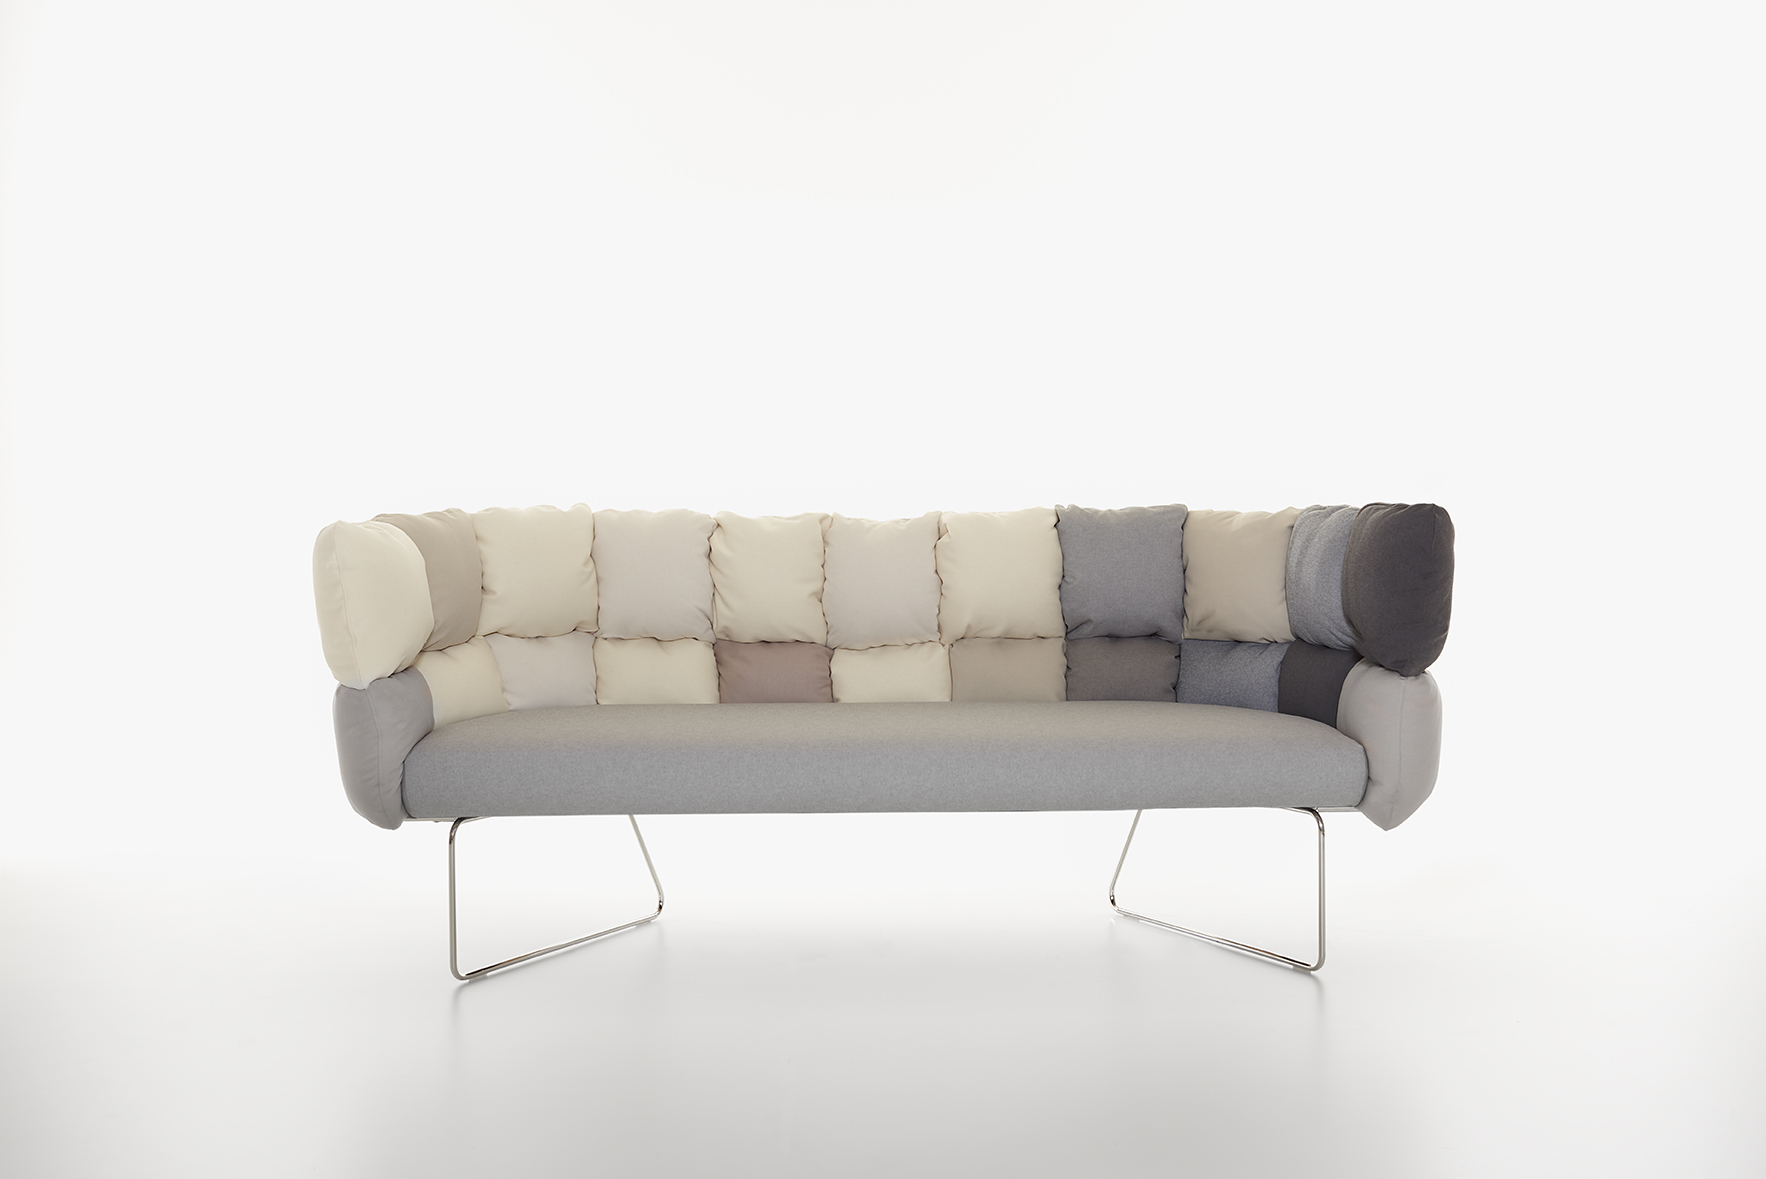 Manerba divani: il nuovo Undecided Sofa per spazi di lavoro in perenne ridefinizione